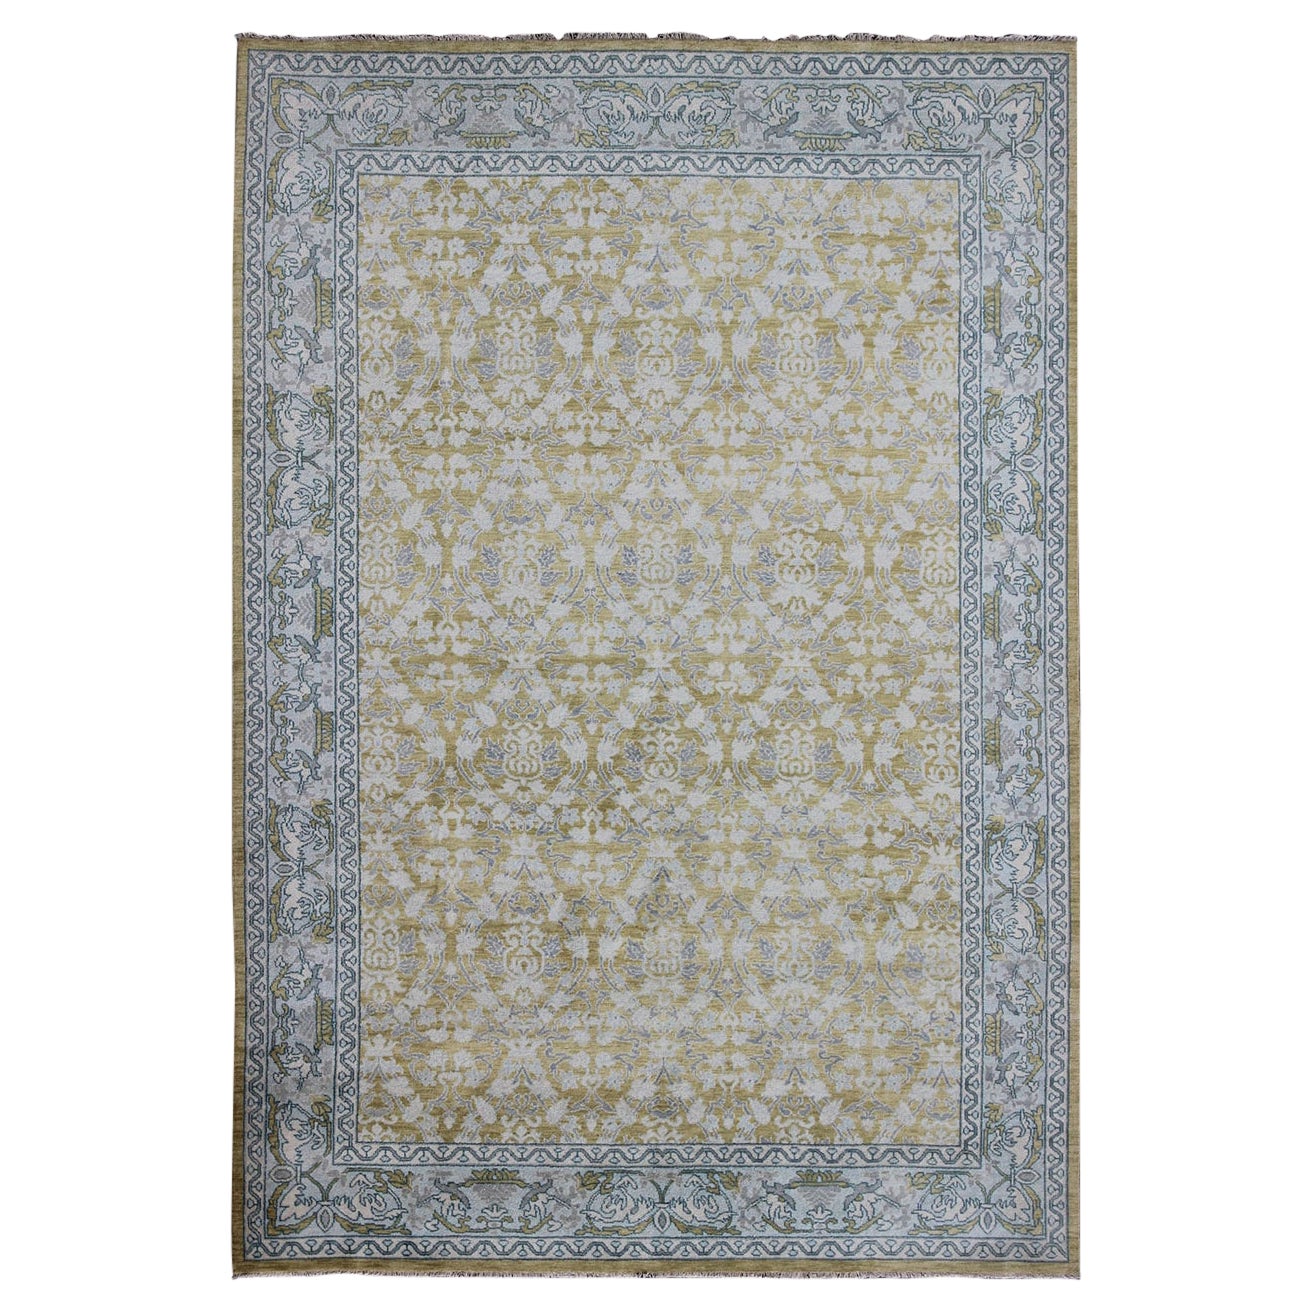 Spanischer Teppich im spanischen Design mit All-Over-Blumenmuster in Säuregelb, Grün, Grau und Blau